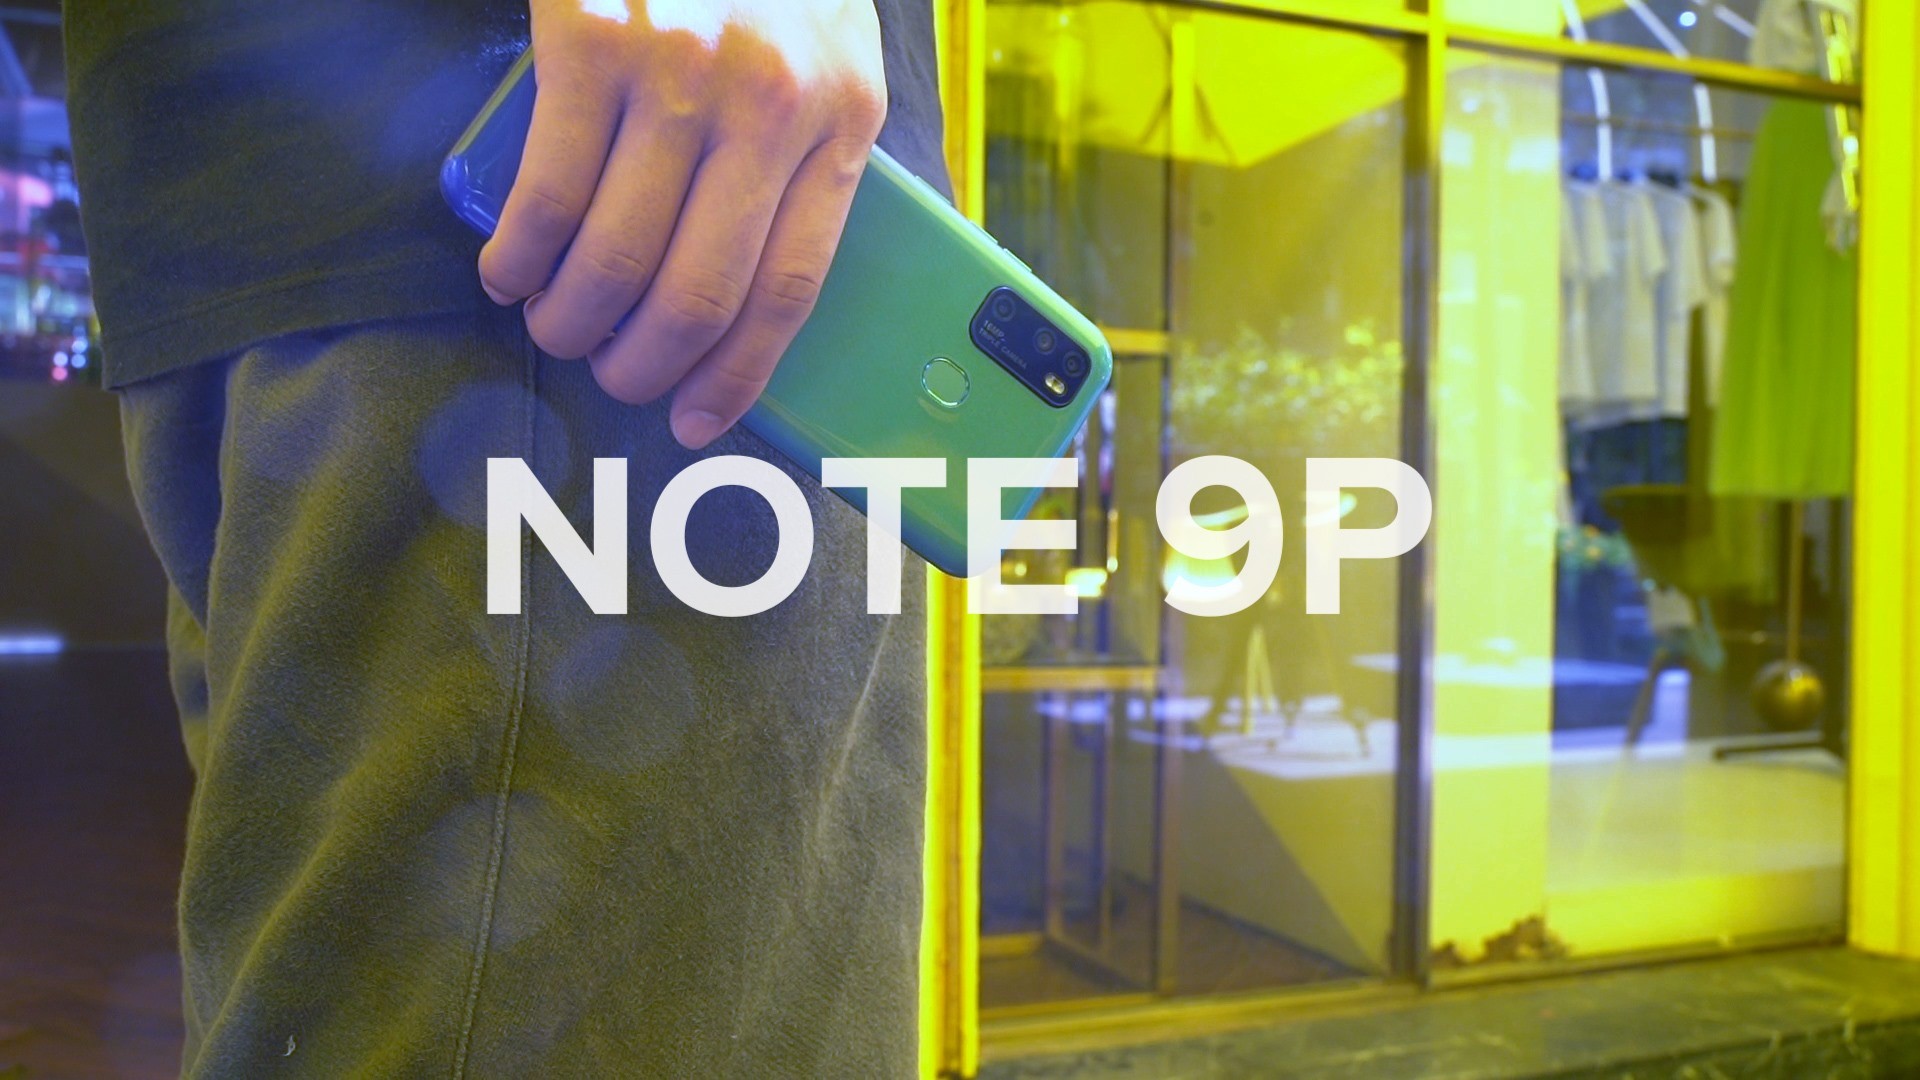 تعرف على مواصفات الهاتف الاقتصادي الجديد Ulefone Note 9p 